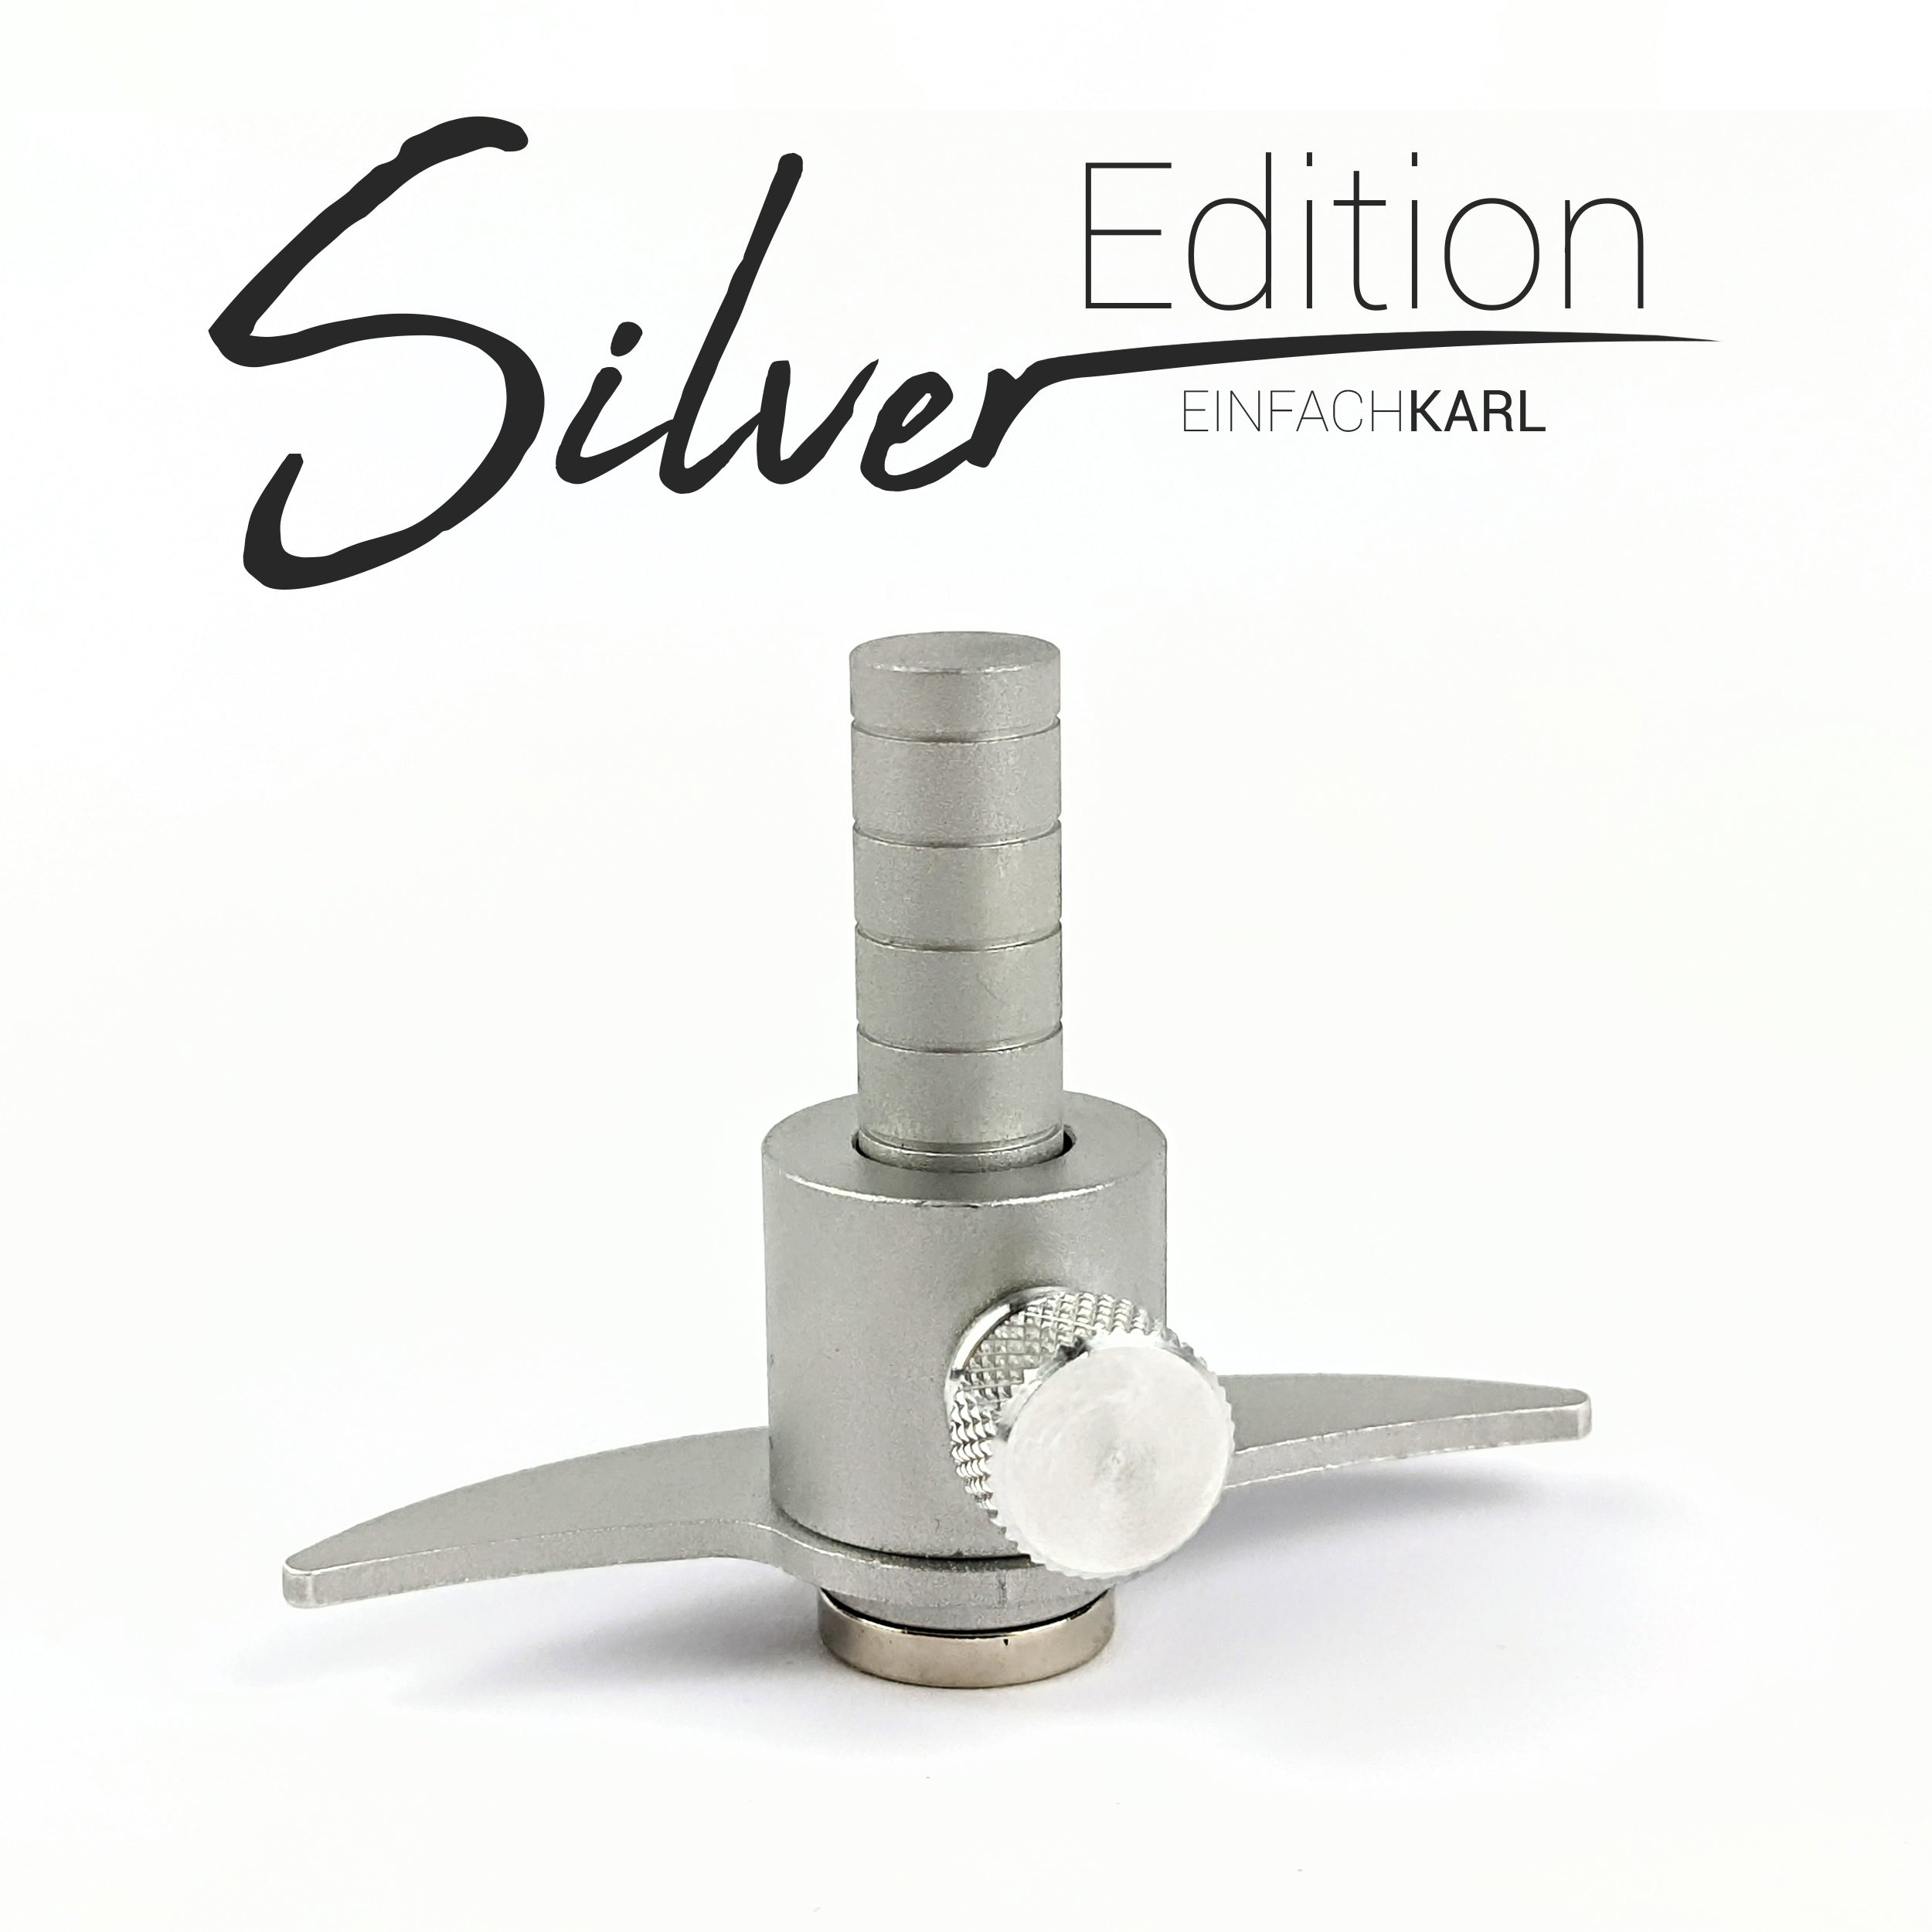 Karlchen (Silver-Edition)